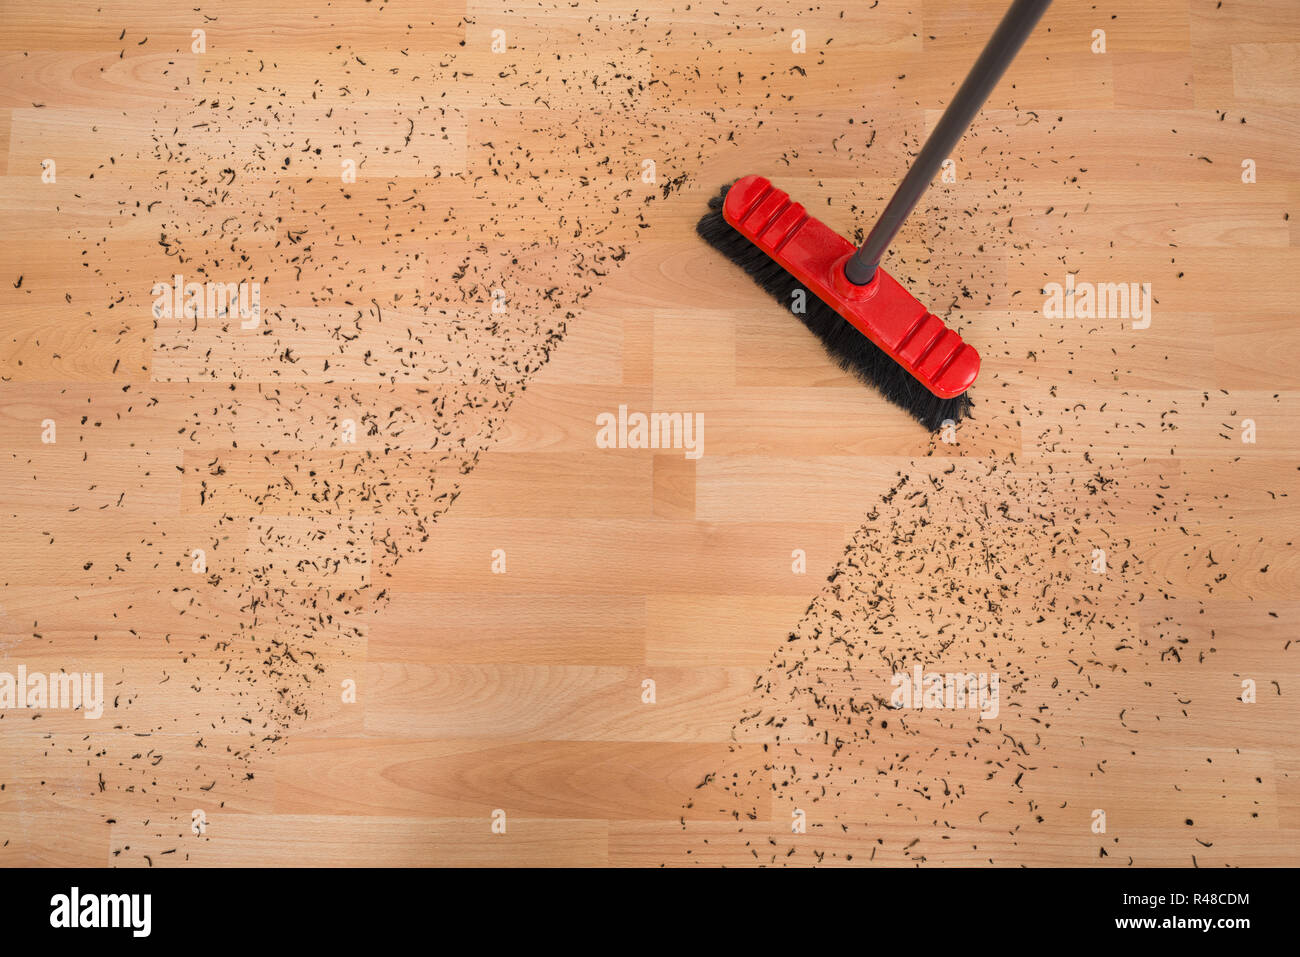 Pulitura della scopa sporco sul pavimento di legno duro Foto Stock